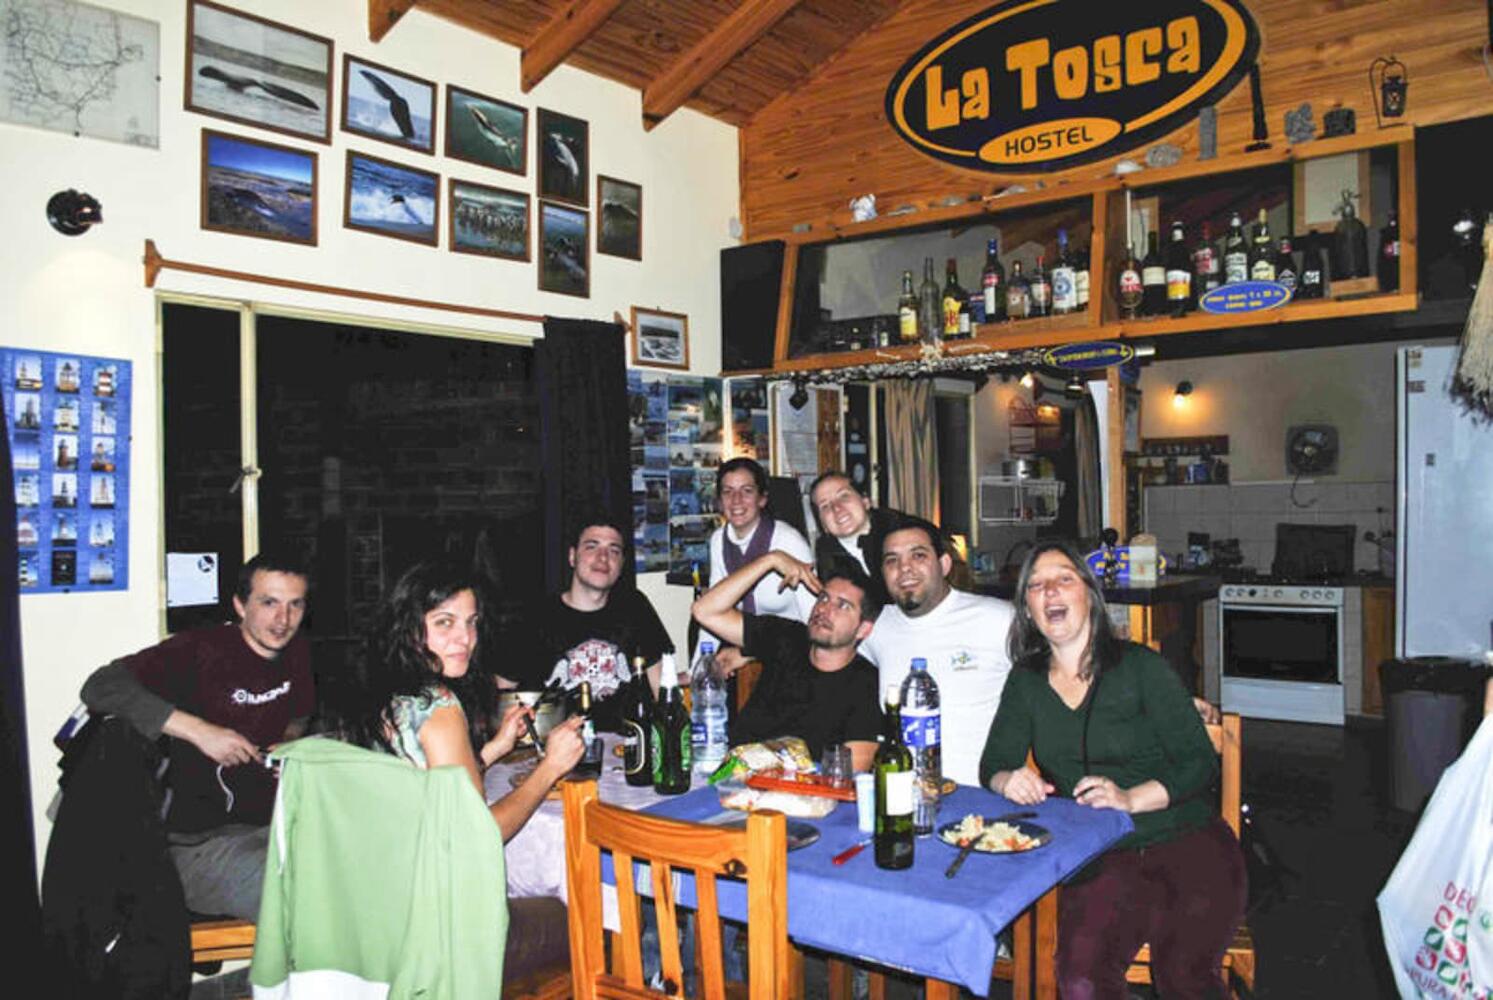 La Tosca Hostel, Puerto Madryn